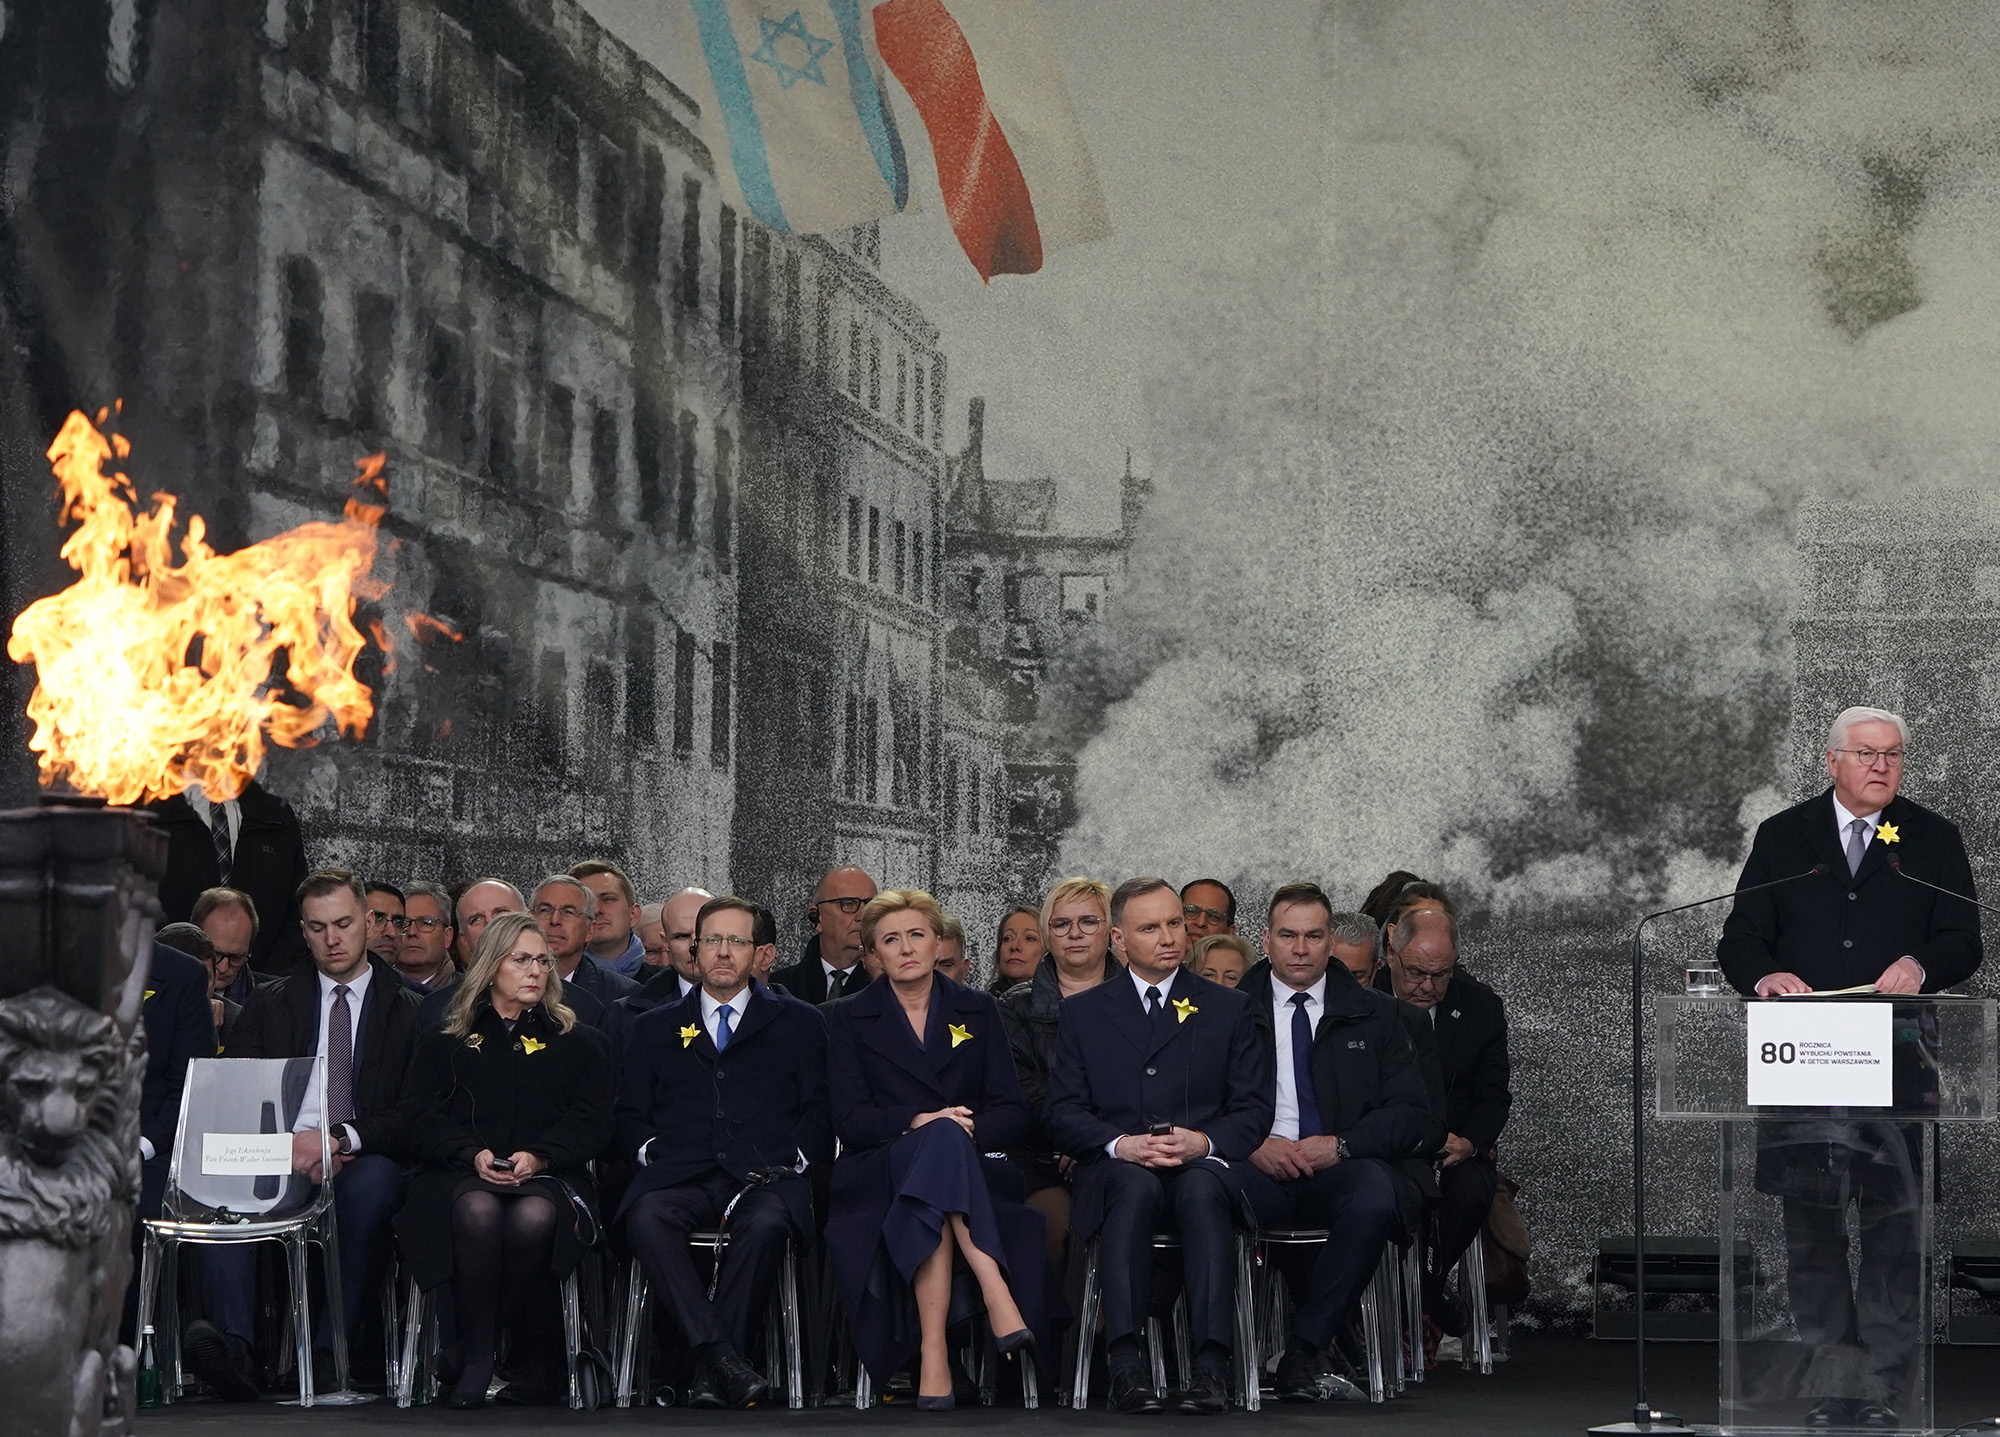 Bundespräsident Steinmeier bei der Gedenkveranstaltung zum 80. Jahrestag des Aufstandes im Warschauer Ghetto (Bild: Janek Skarzynski/AFP)